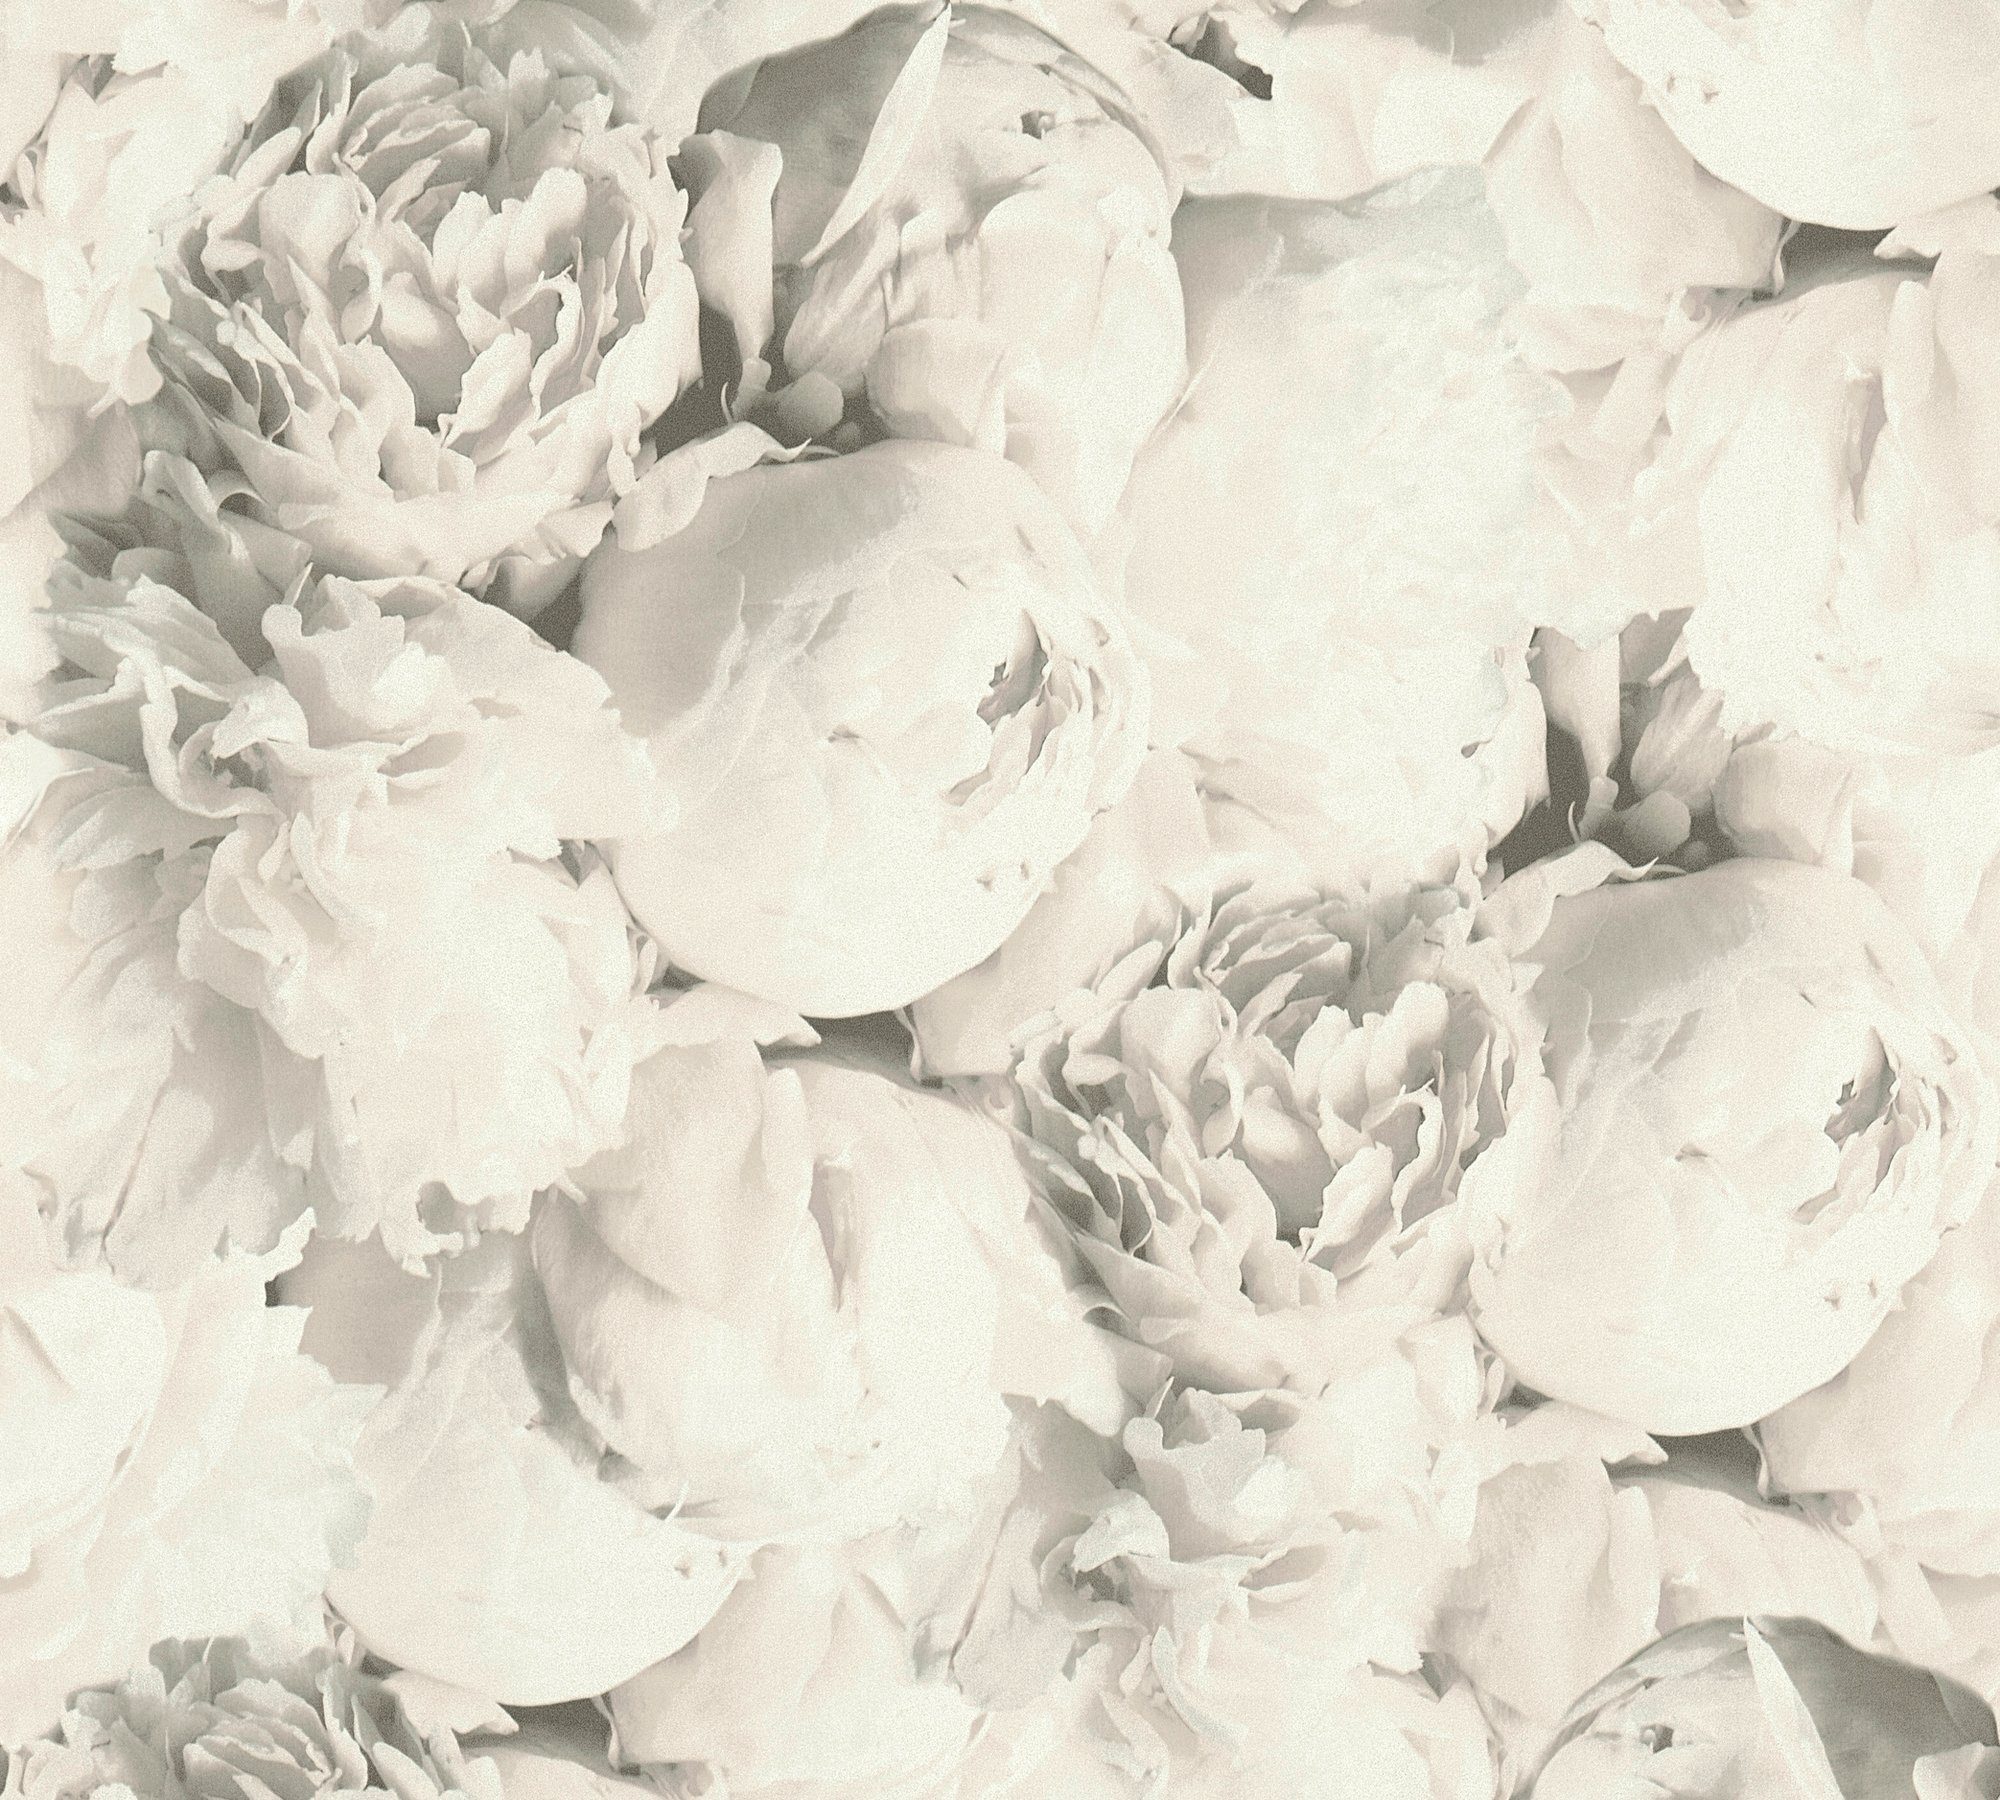 Bude Floral floral, Rosen, Blumen Flowery Romantic Tapete Vliestapete Neue 2.0 Création romantischen grau/weiß mit A.S.